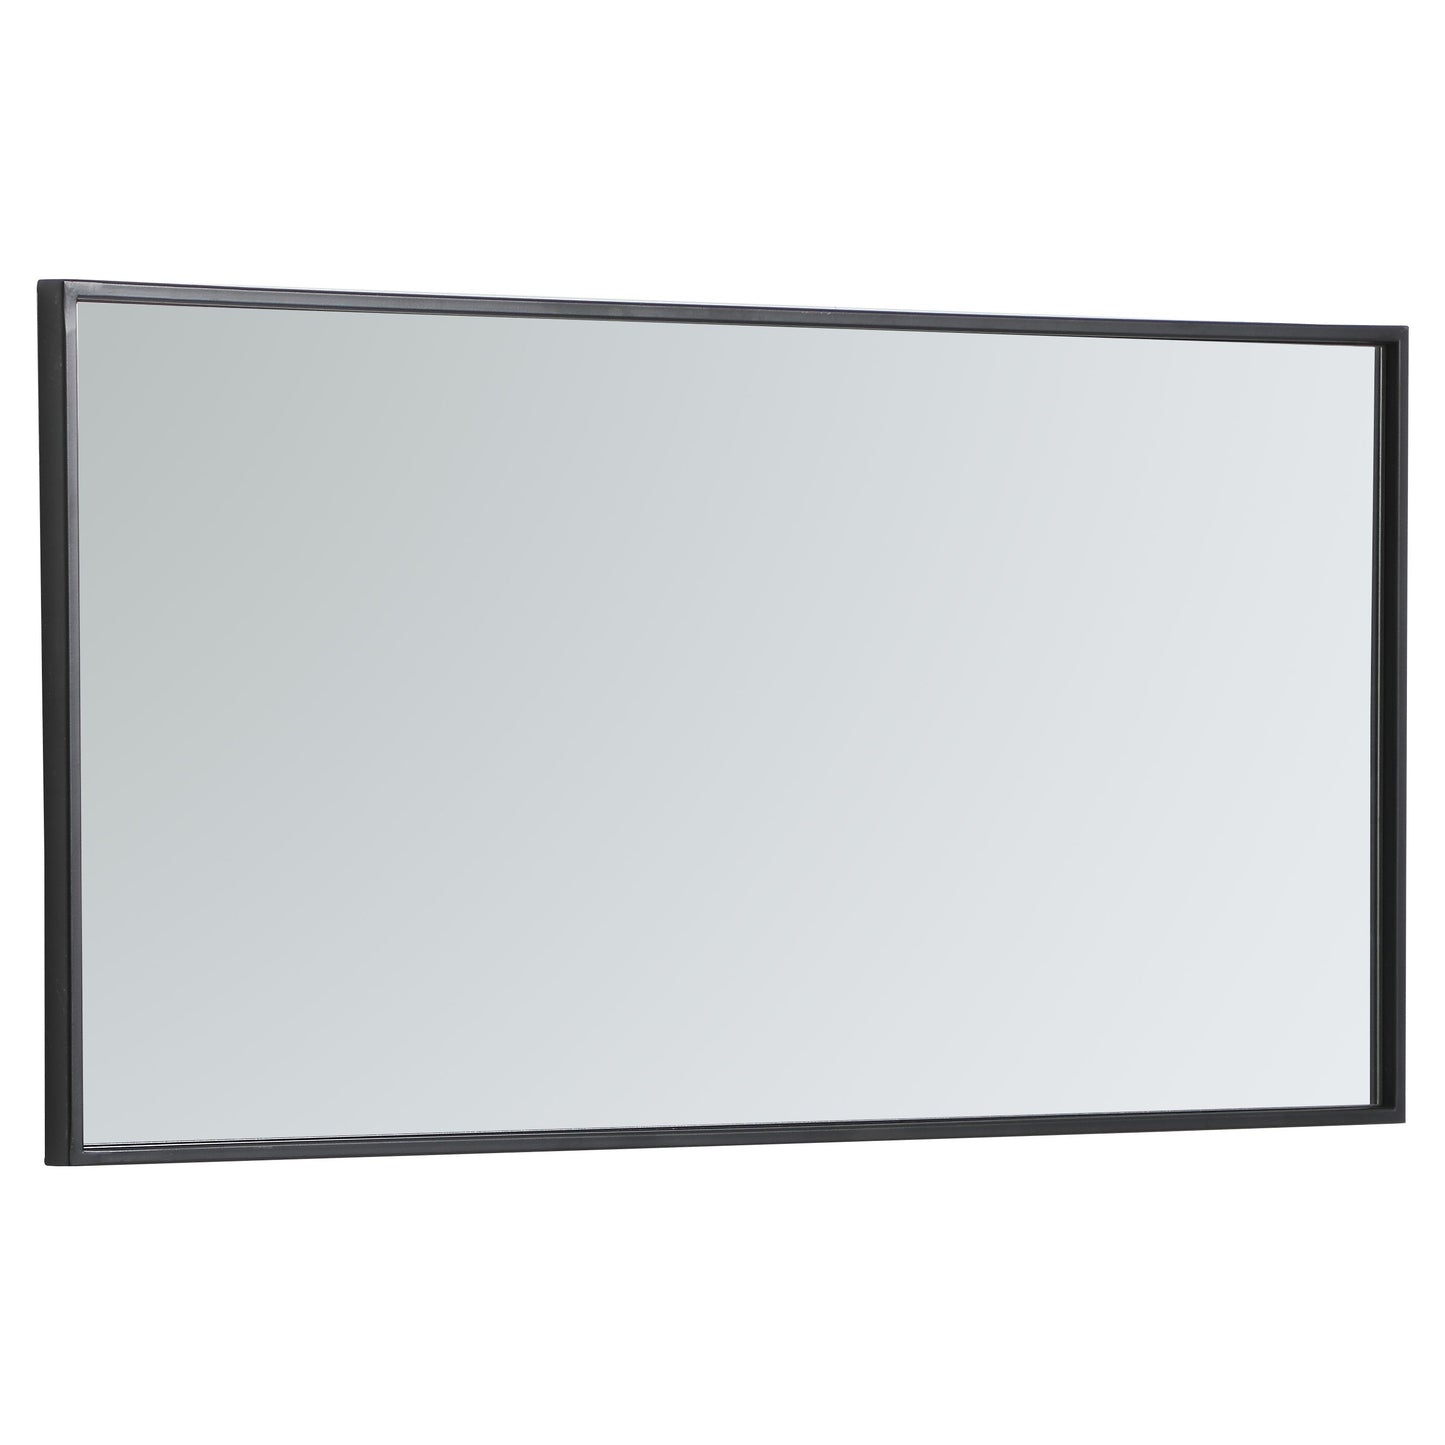 MR41836BK Monet 18" x 36" Metal Framed Rectangular Mirror in Black